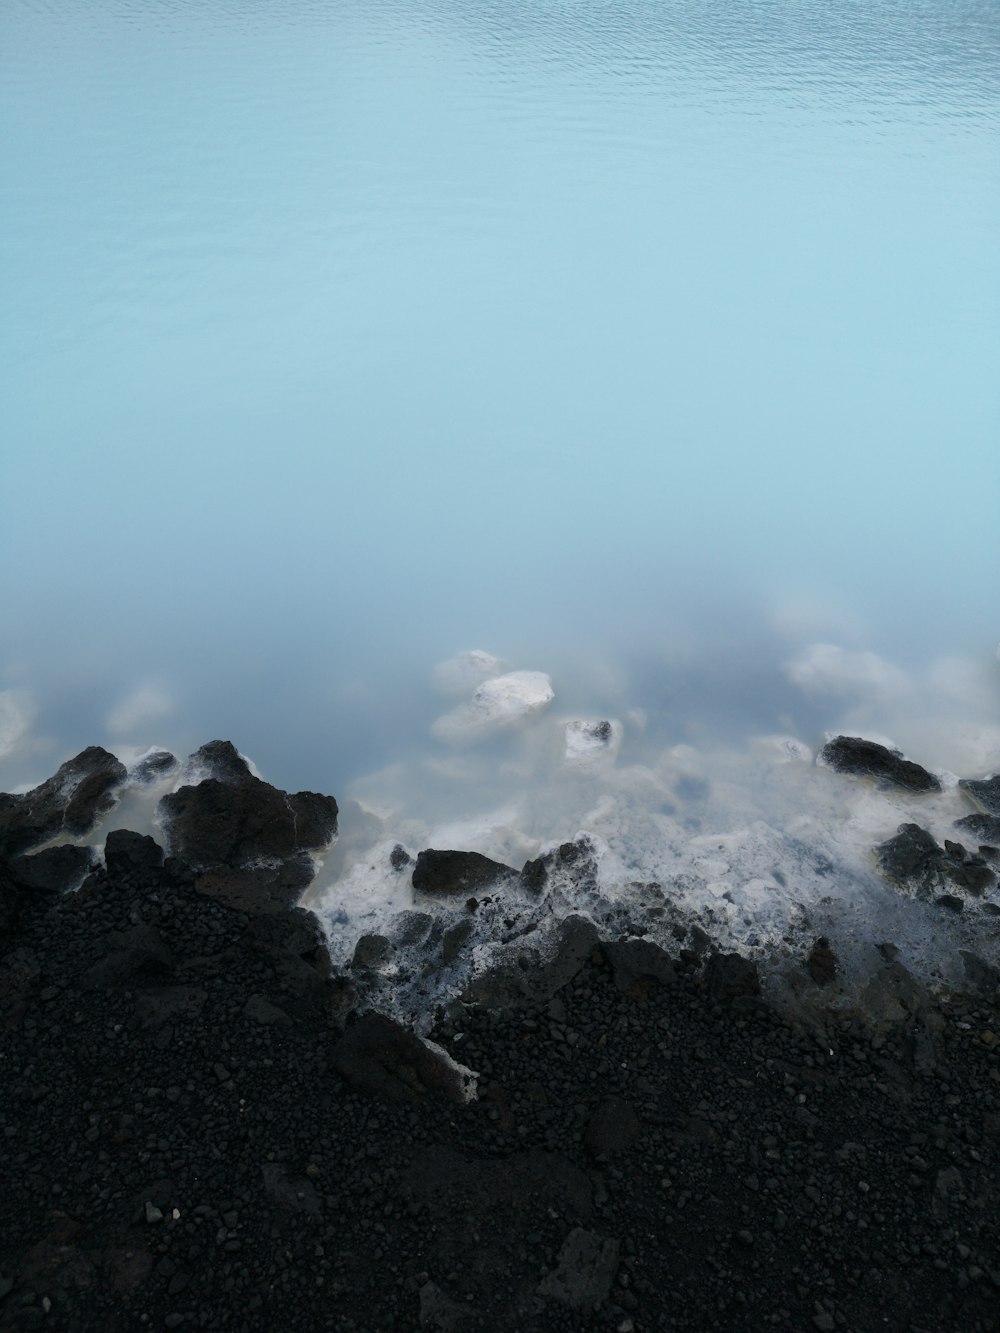 body of water beside black rocks